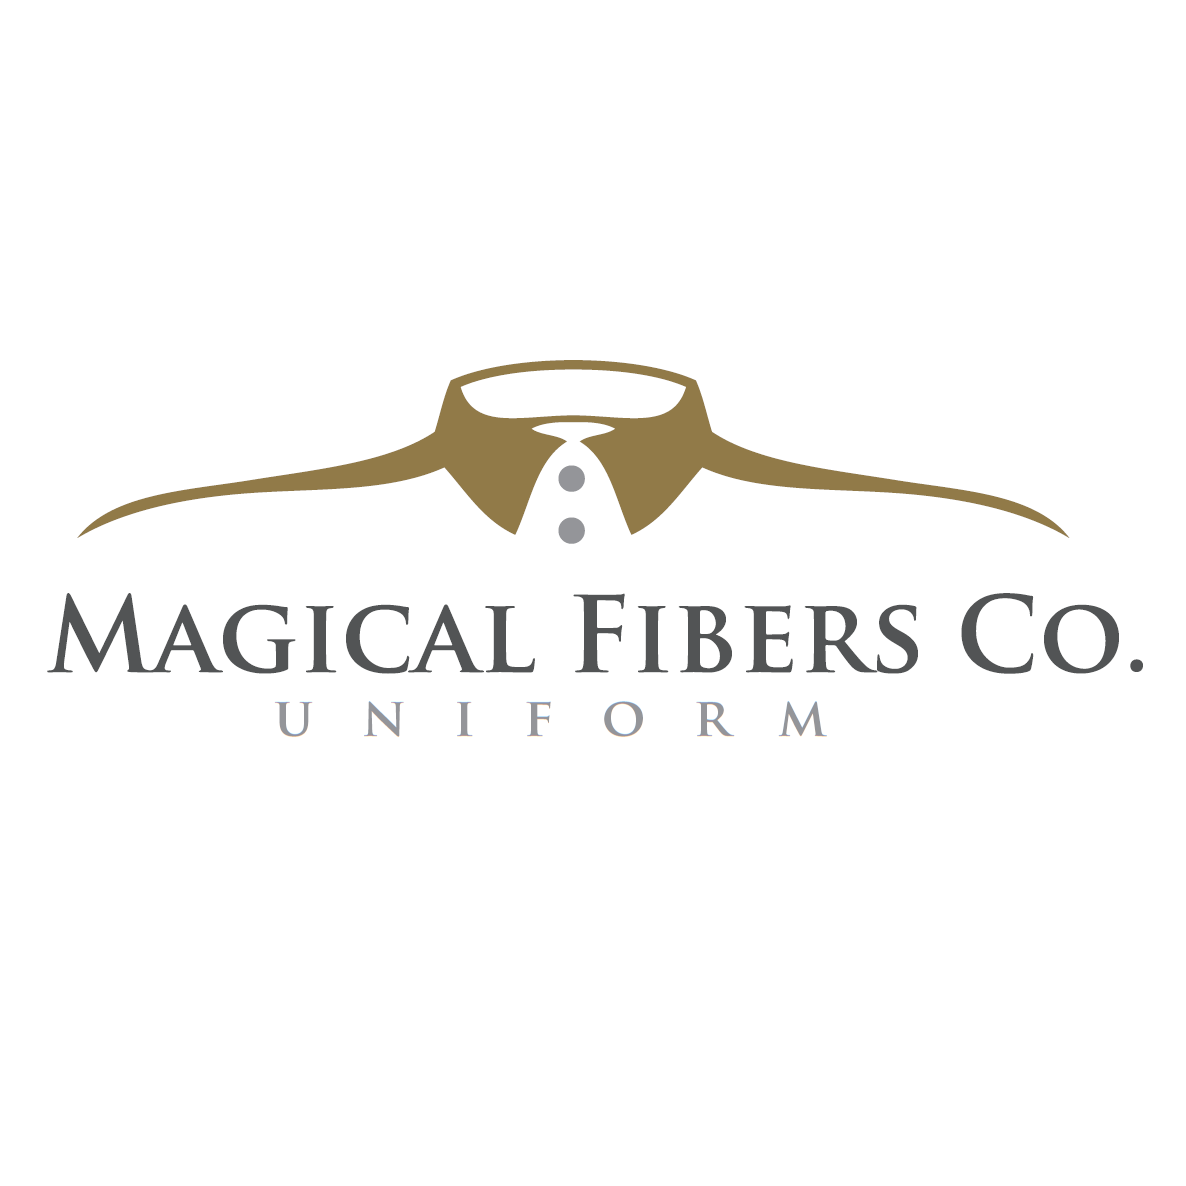 Magical Fibers Uniforms